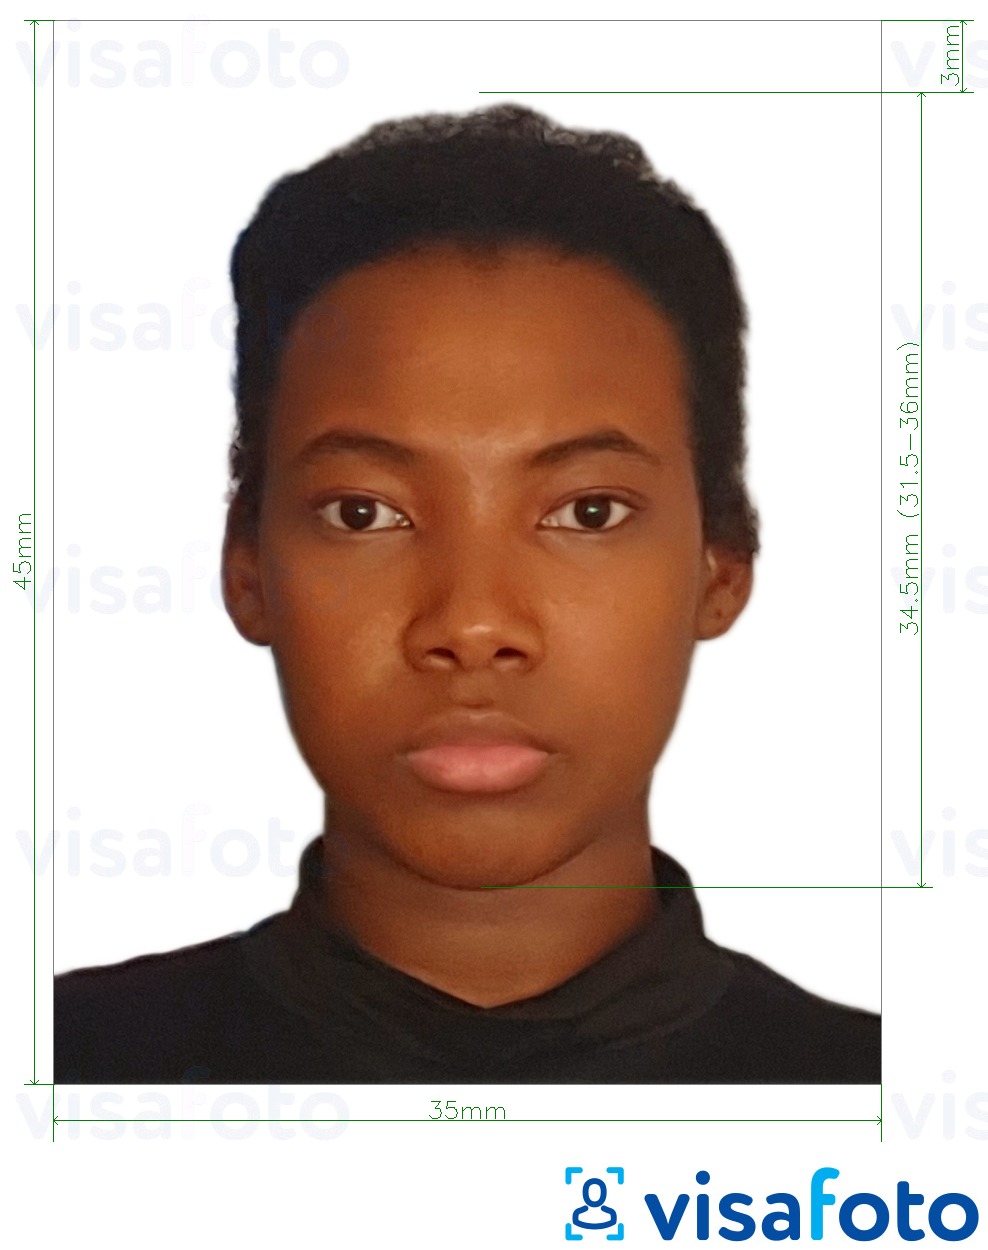 Voorbeeld van foto voor Ghana visum 3.5x4.5 cm (35x45 mm) met exacte maatspecificatie